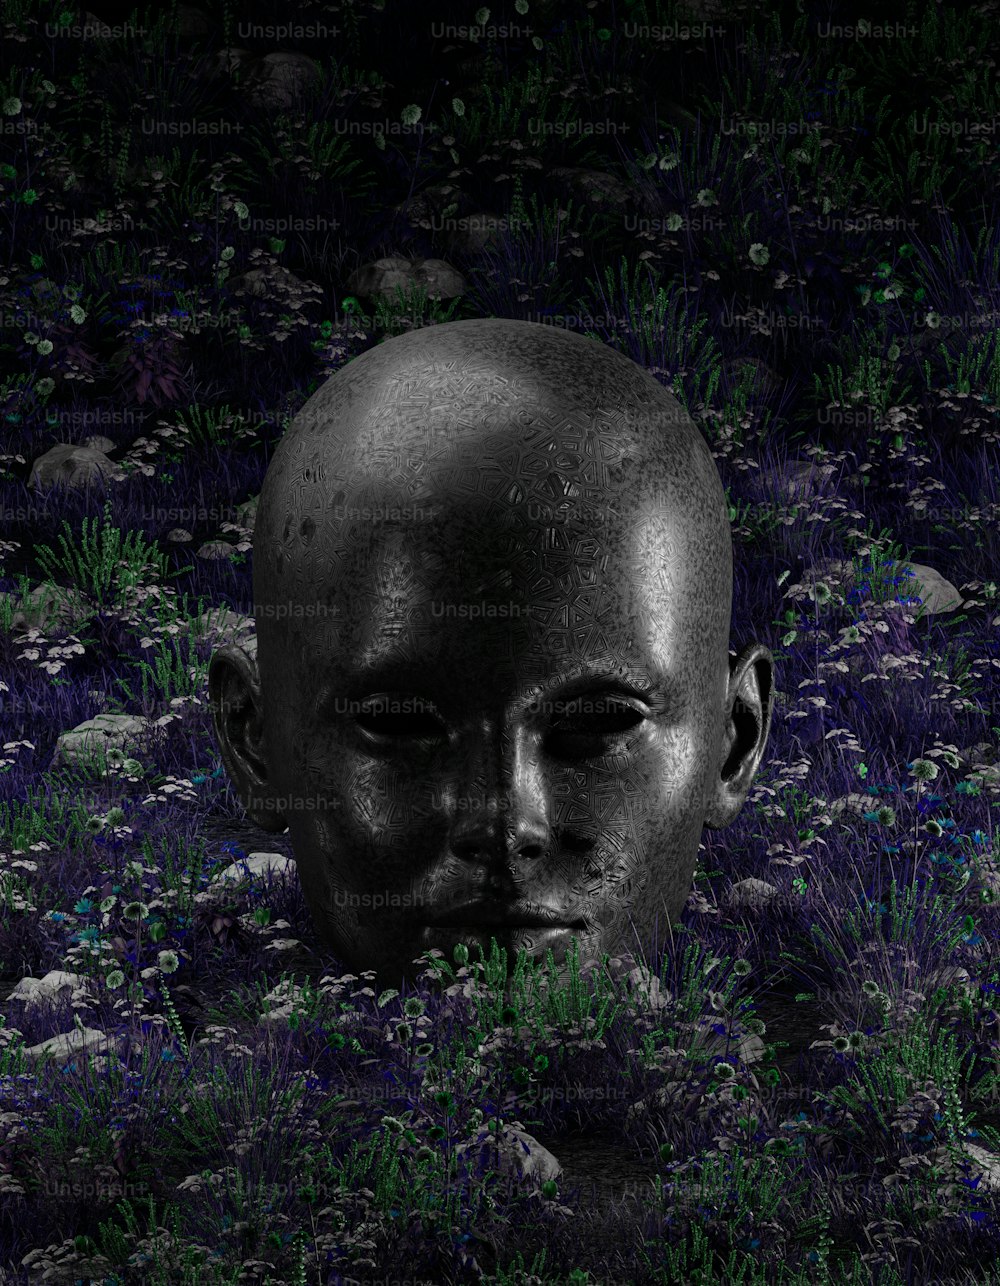 a strange looking head in a field of flowers